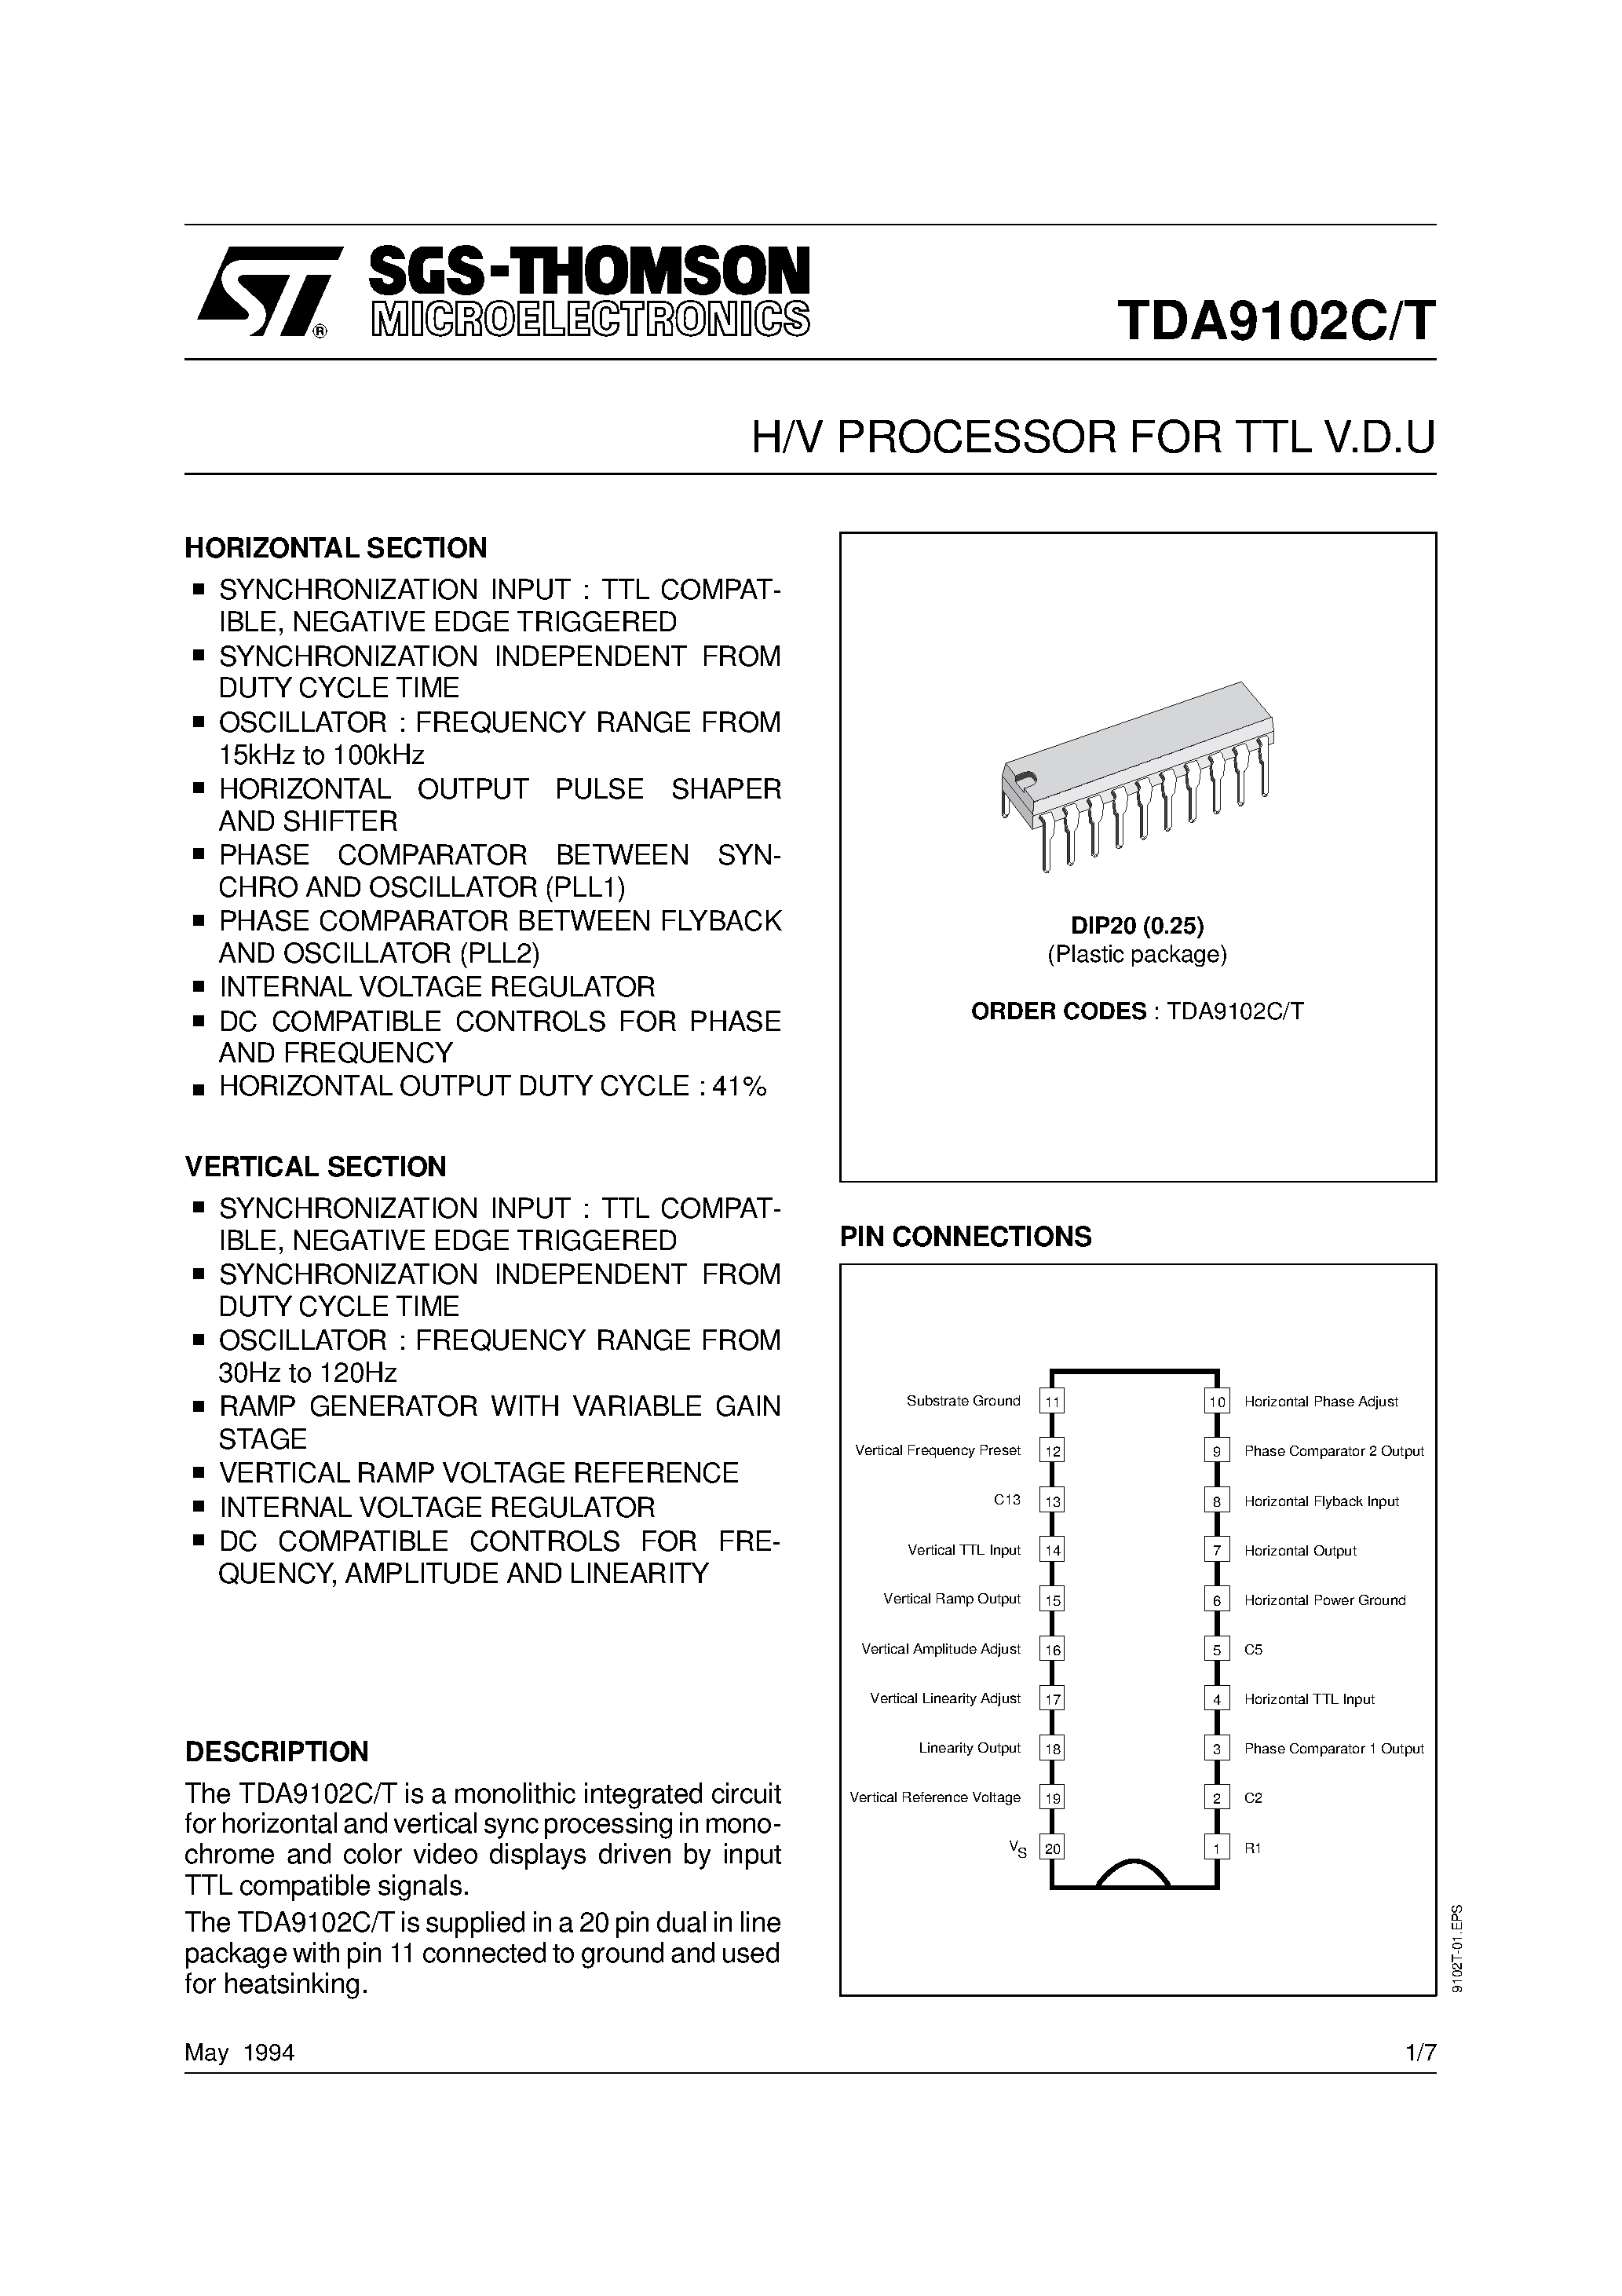 Datasheet TDA9102CT - H/V PROCESSOR FOR TTL V.D.U page 1